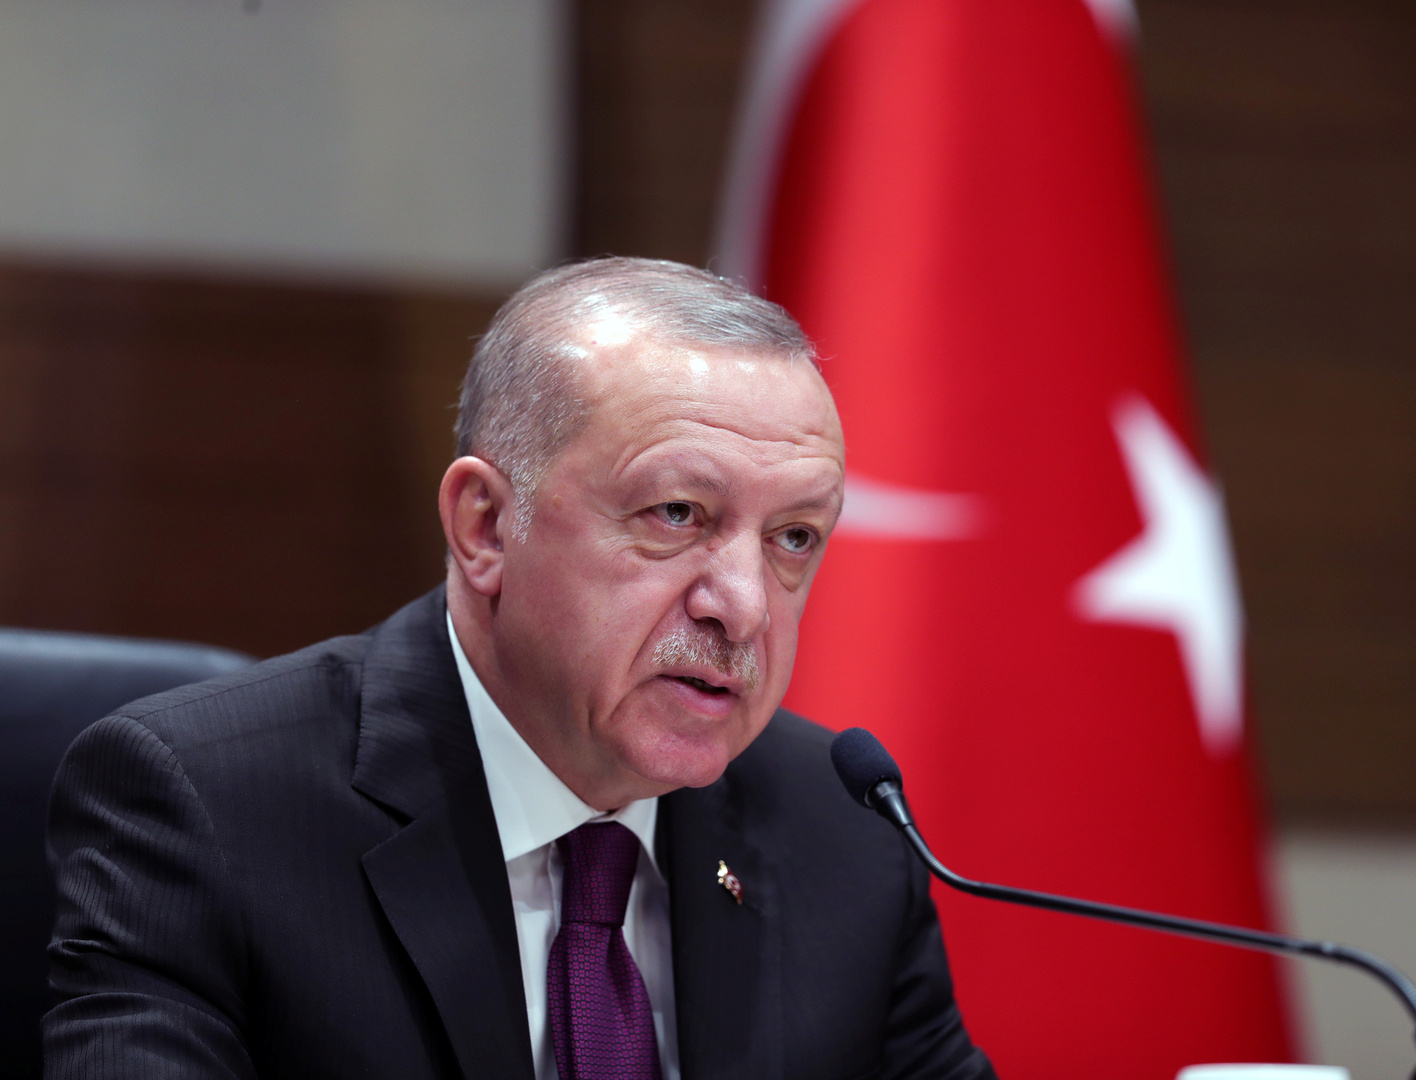 أردوغان: ليست هناك ضرورة للدخول في نزاع مع روسيا في المرحلة الحالية ولدينا مبادرات مشتركة